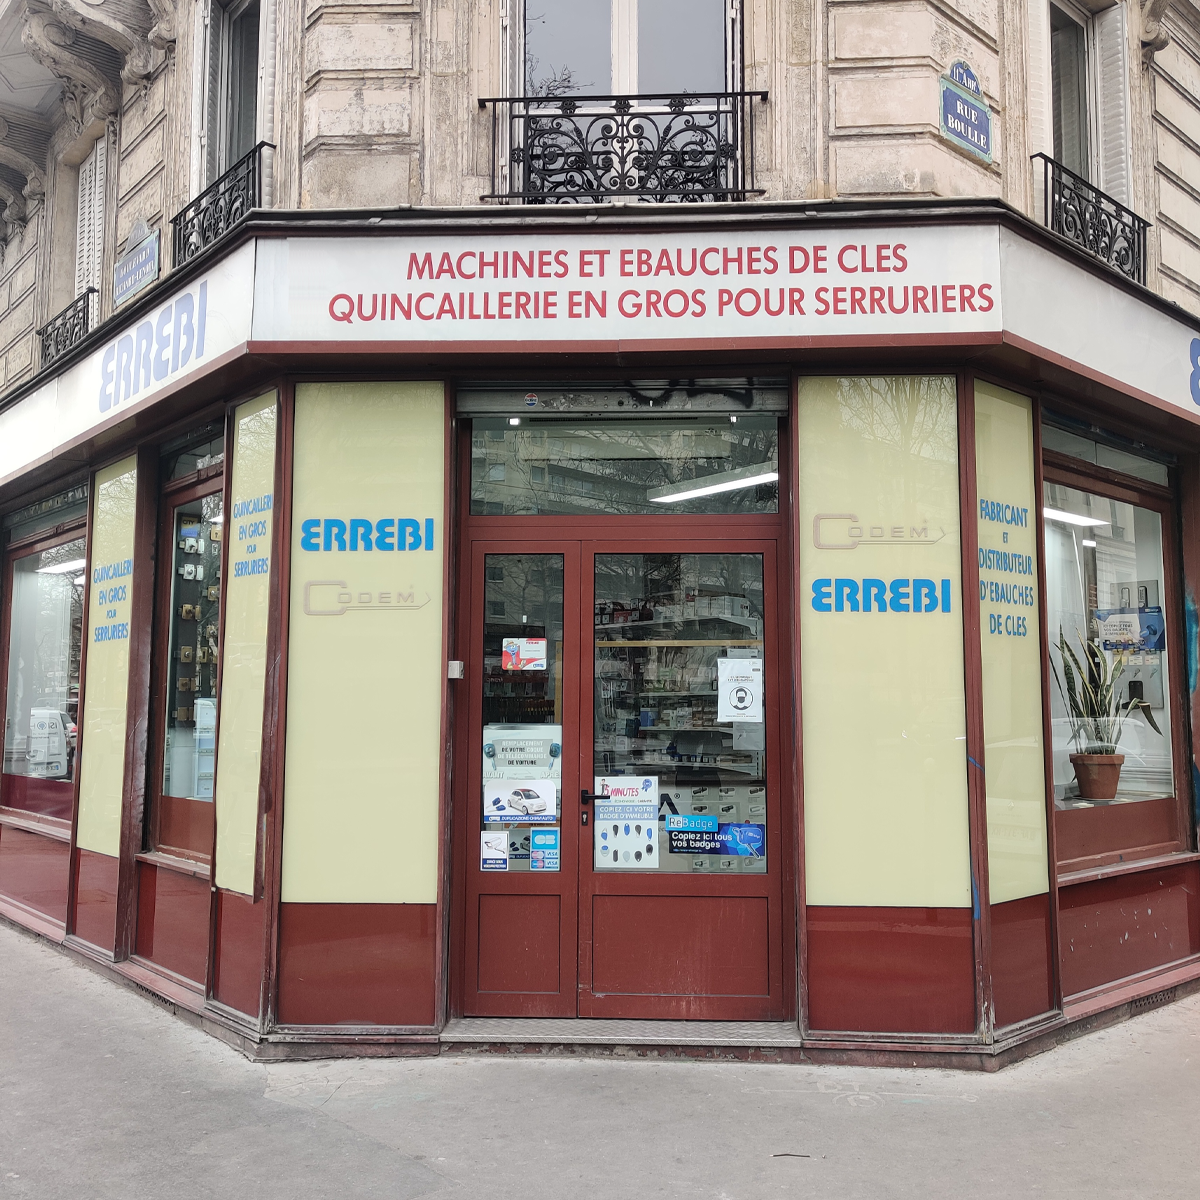 Errebi Codem Paris : Fournisseur ebauches cls machines repro